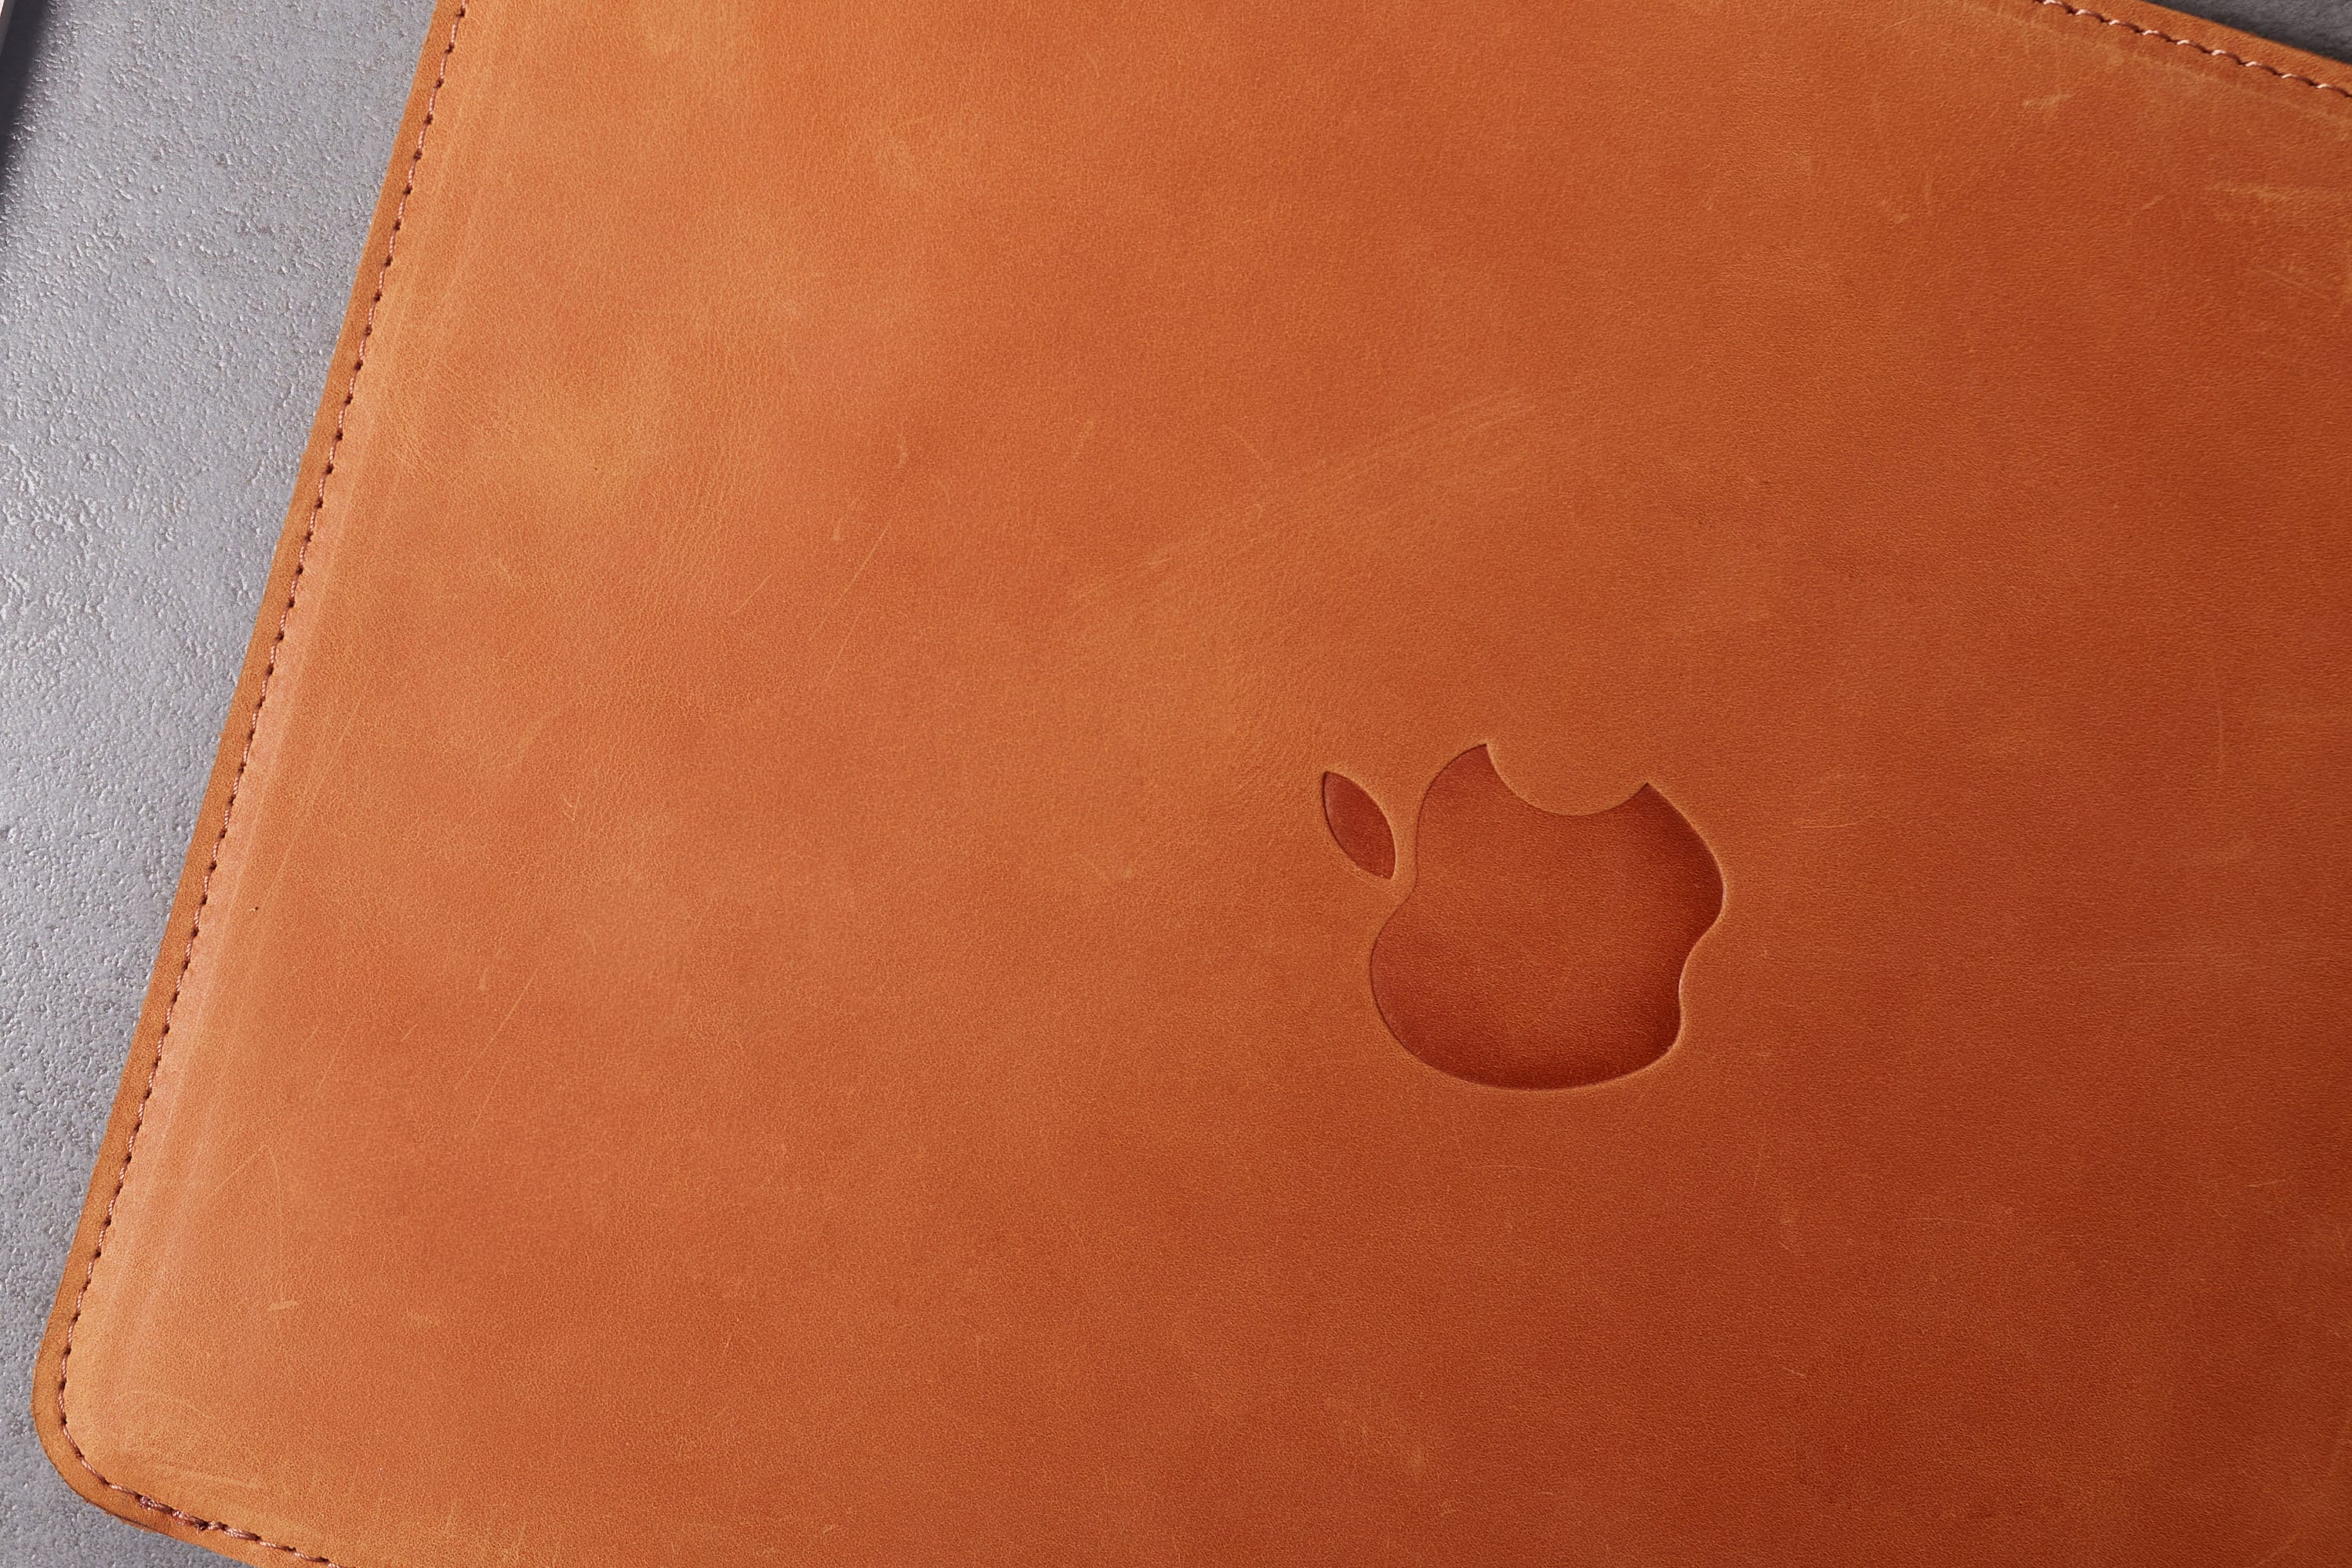 Housse en cuir MacBook Pro/Air  Couleur rouge - THE ERITAGE – THE